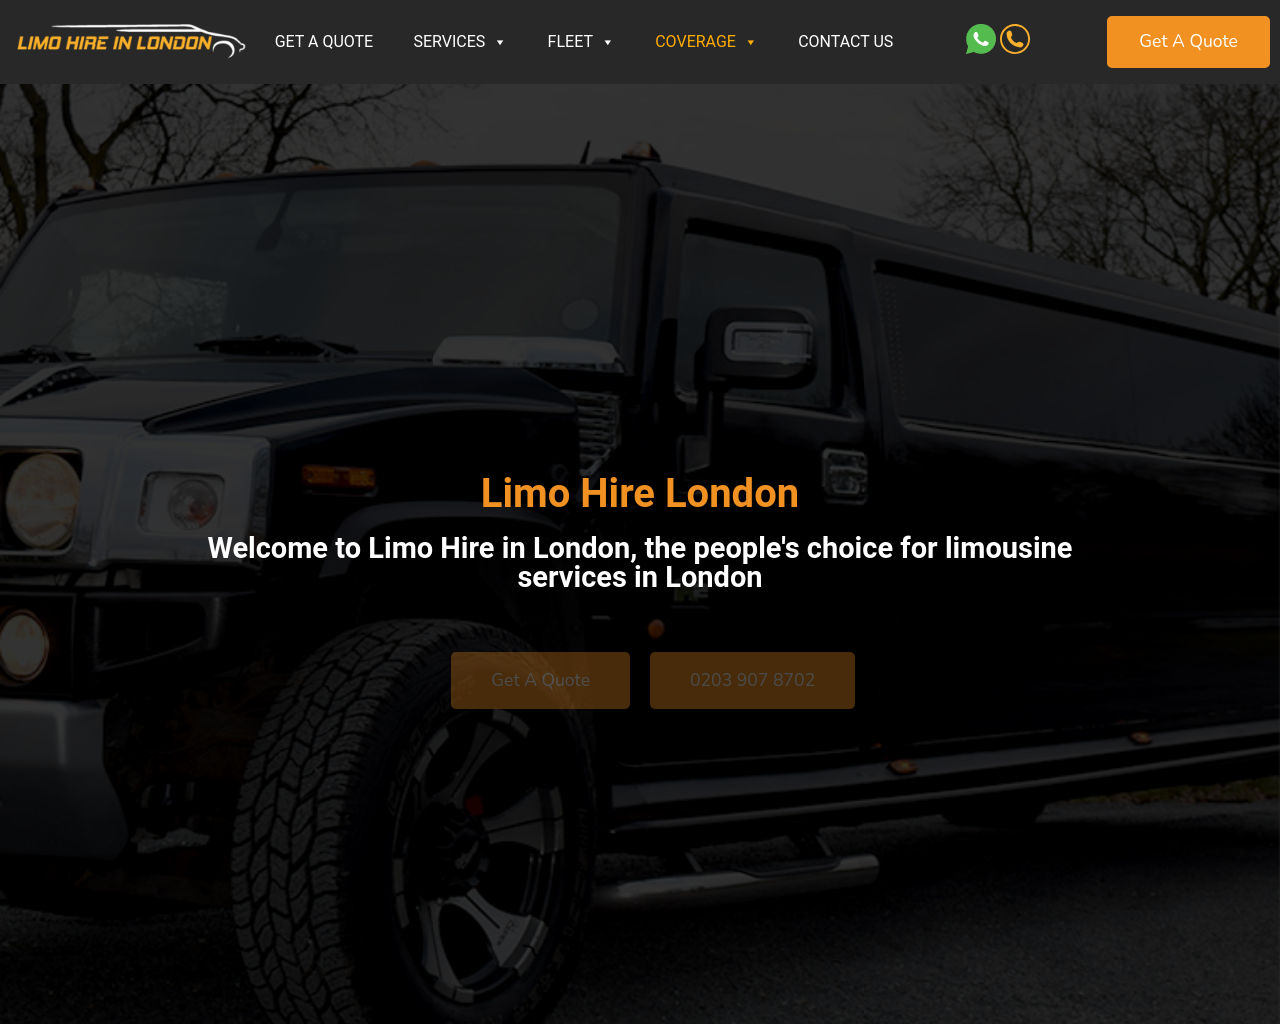 limohire-in-london.co.uk